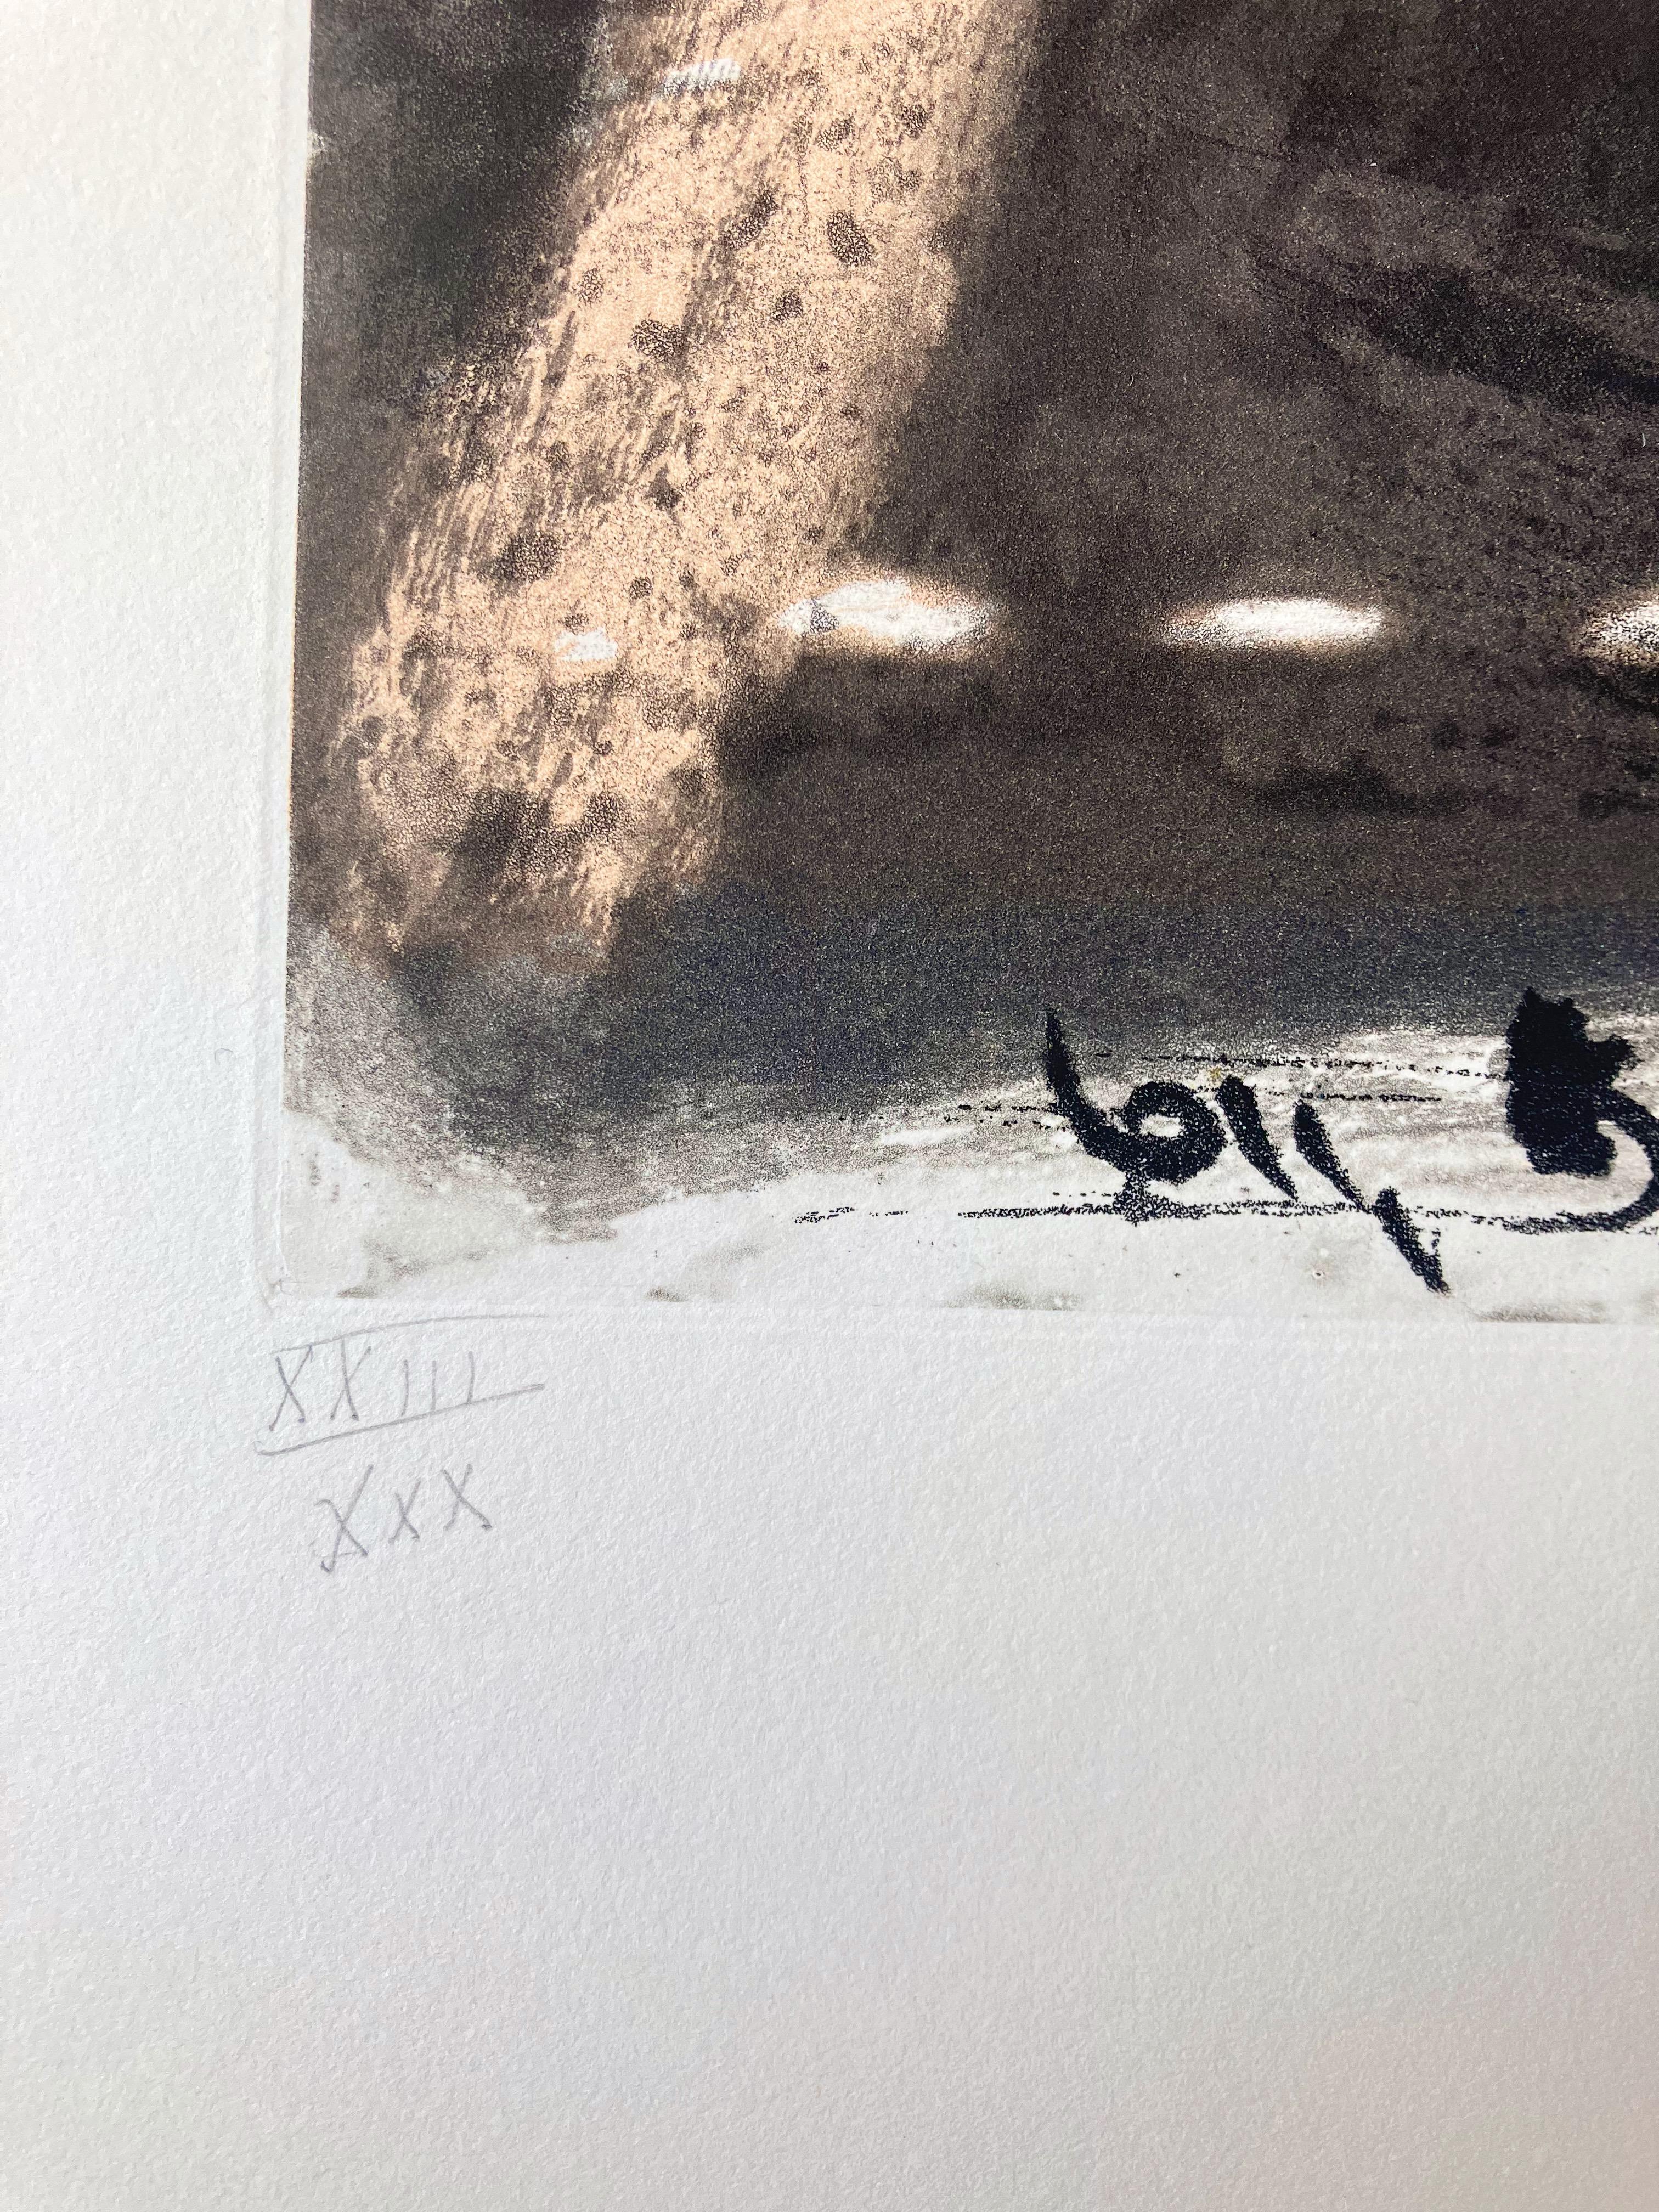 Artistics : Antoni Tapies - Espagnol (1923- 2012)
Titre : Sans titre, extrait de Paroles Peintes IV, publié par O. Lazar-Vernet, Paris
Date : 1970
Support : Gravure et aquatinte en couleurs sur BFK Rives
Taille de l'image : 28,5 X 19 cm  (11.25 X